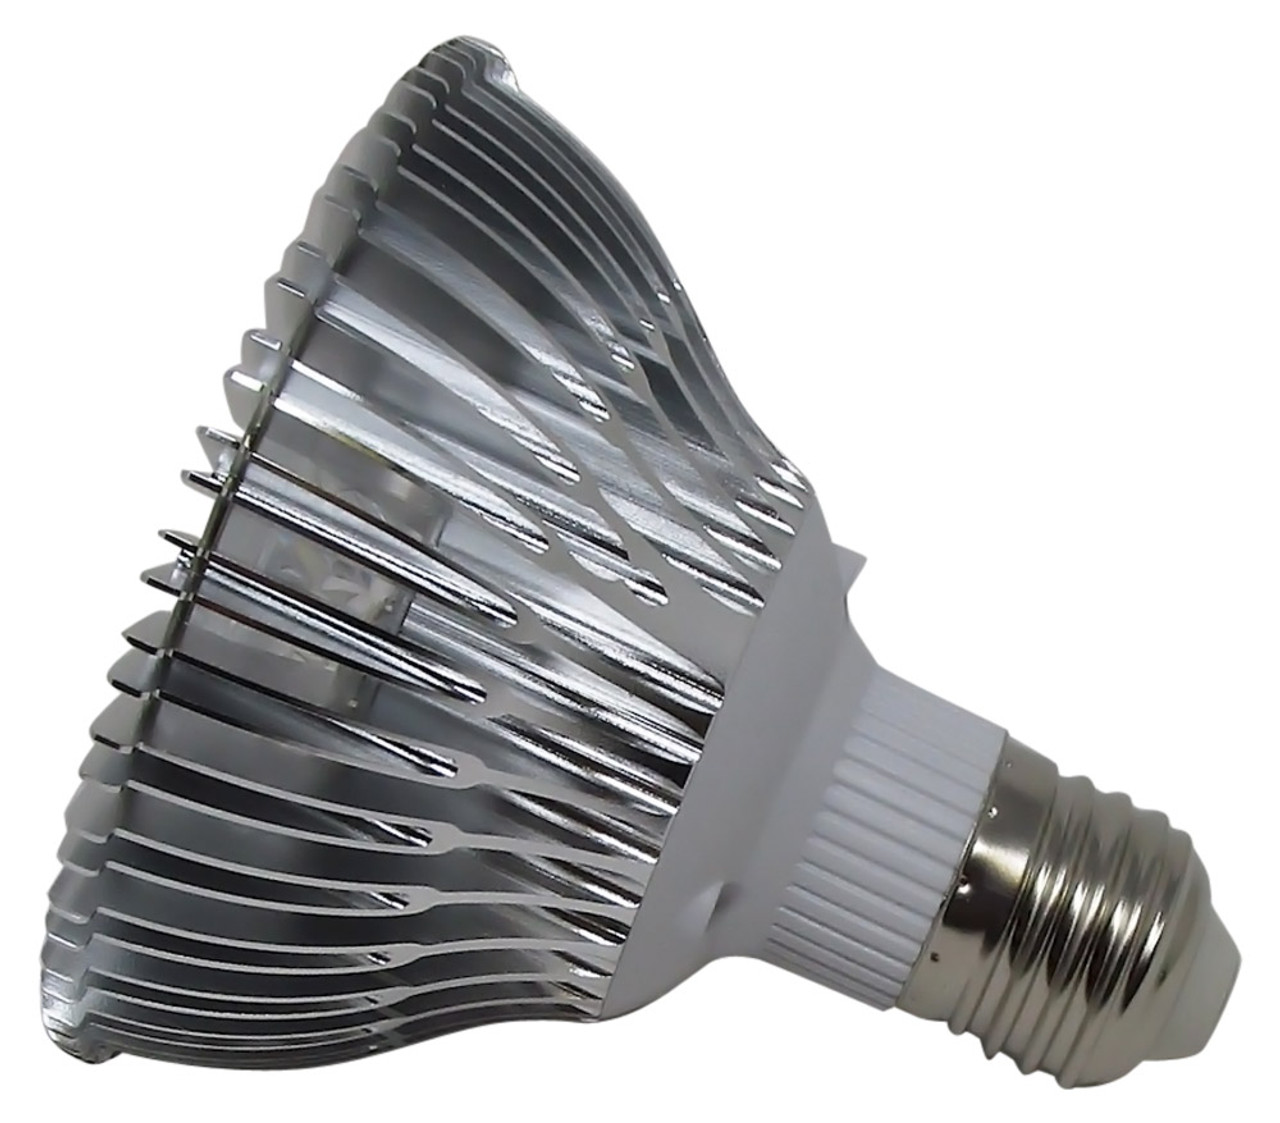 BBB7W365 seven watt UV LED lamp emitting 365 NM energy